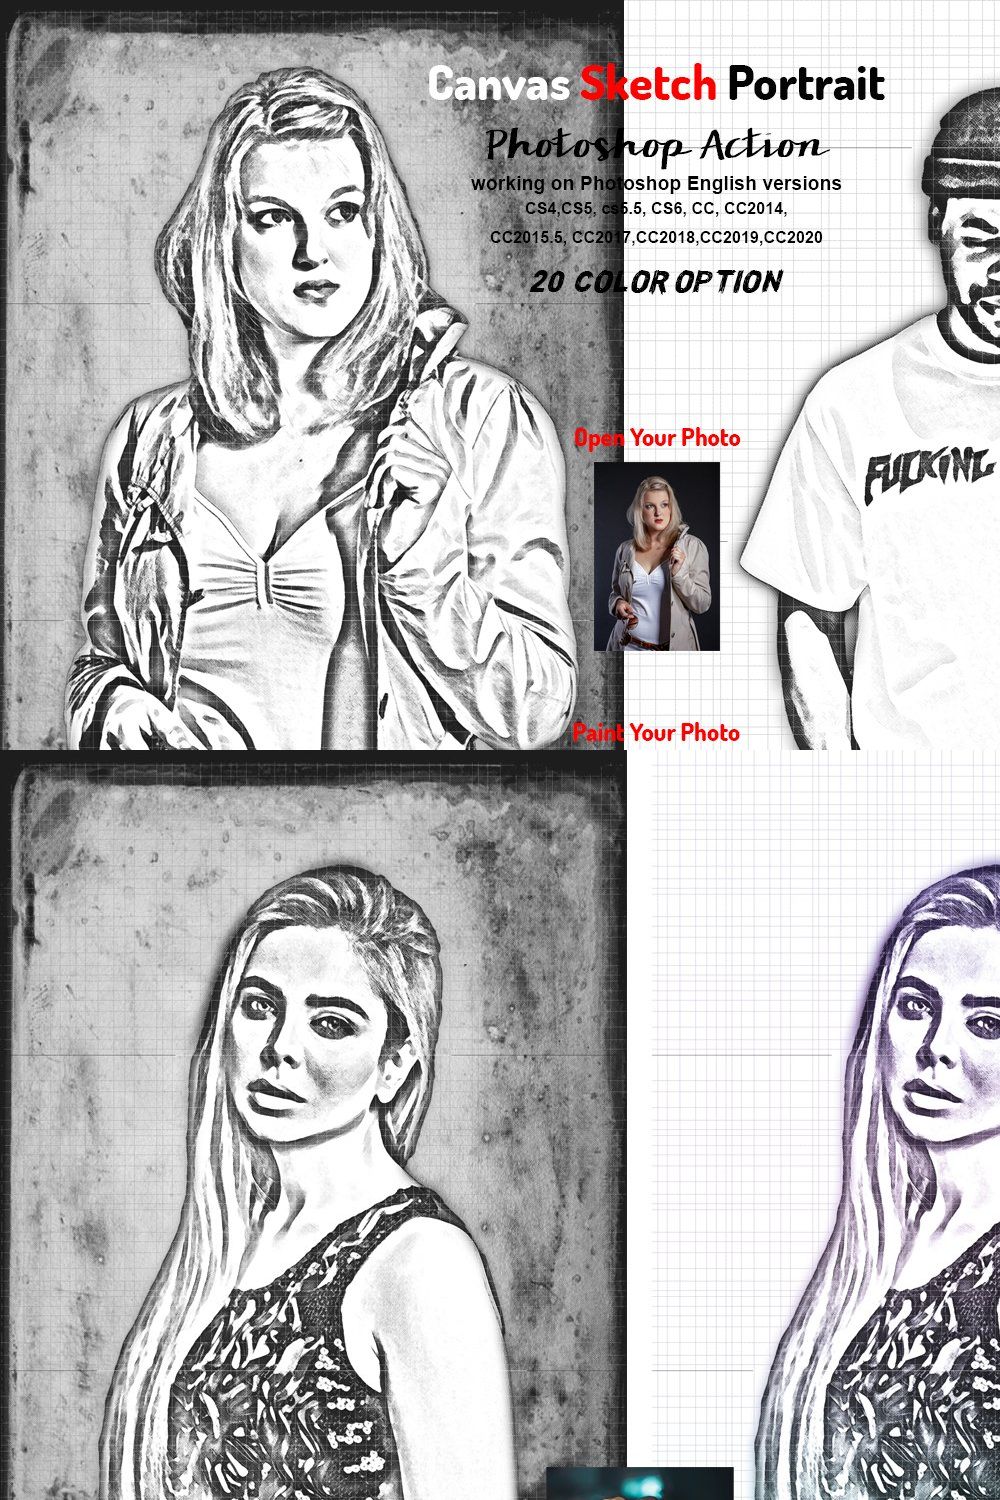 Canvas Sketch Portrait PS Action pinterest preview image.